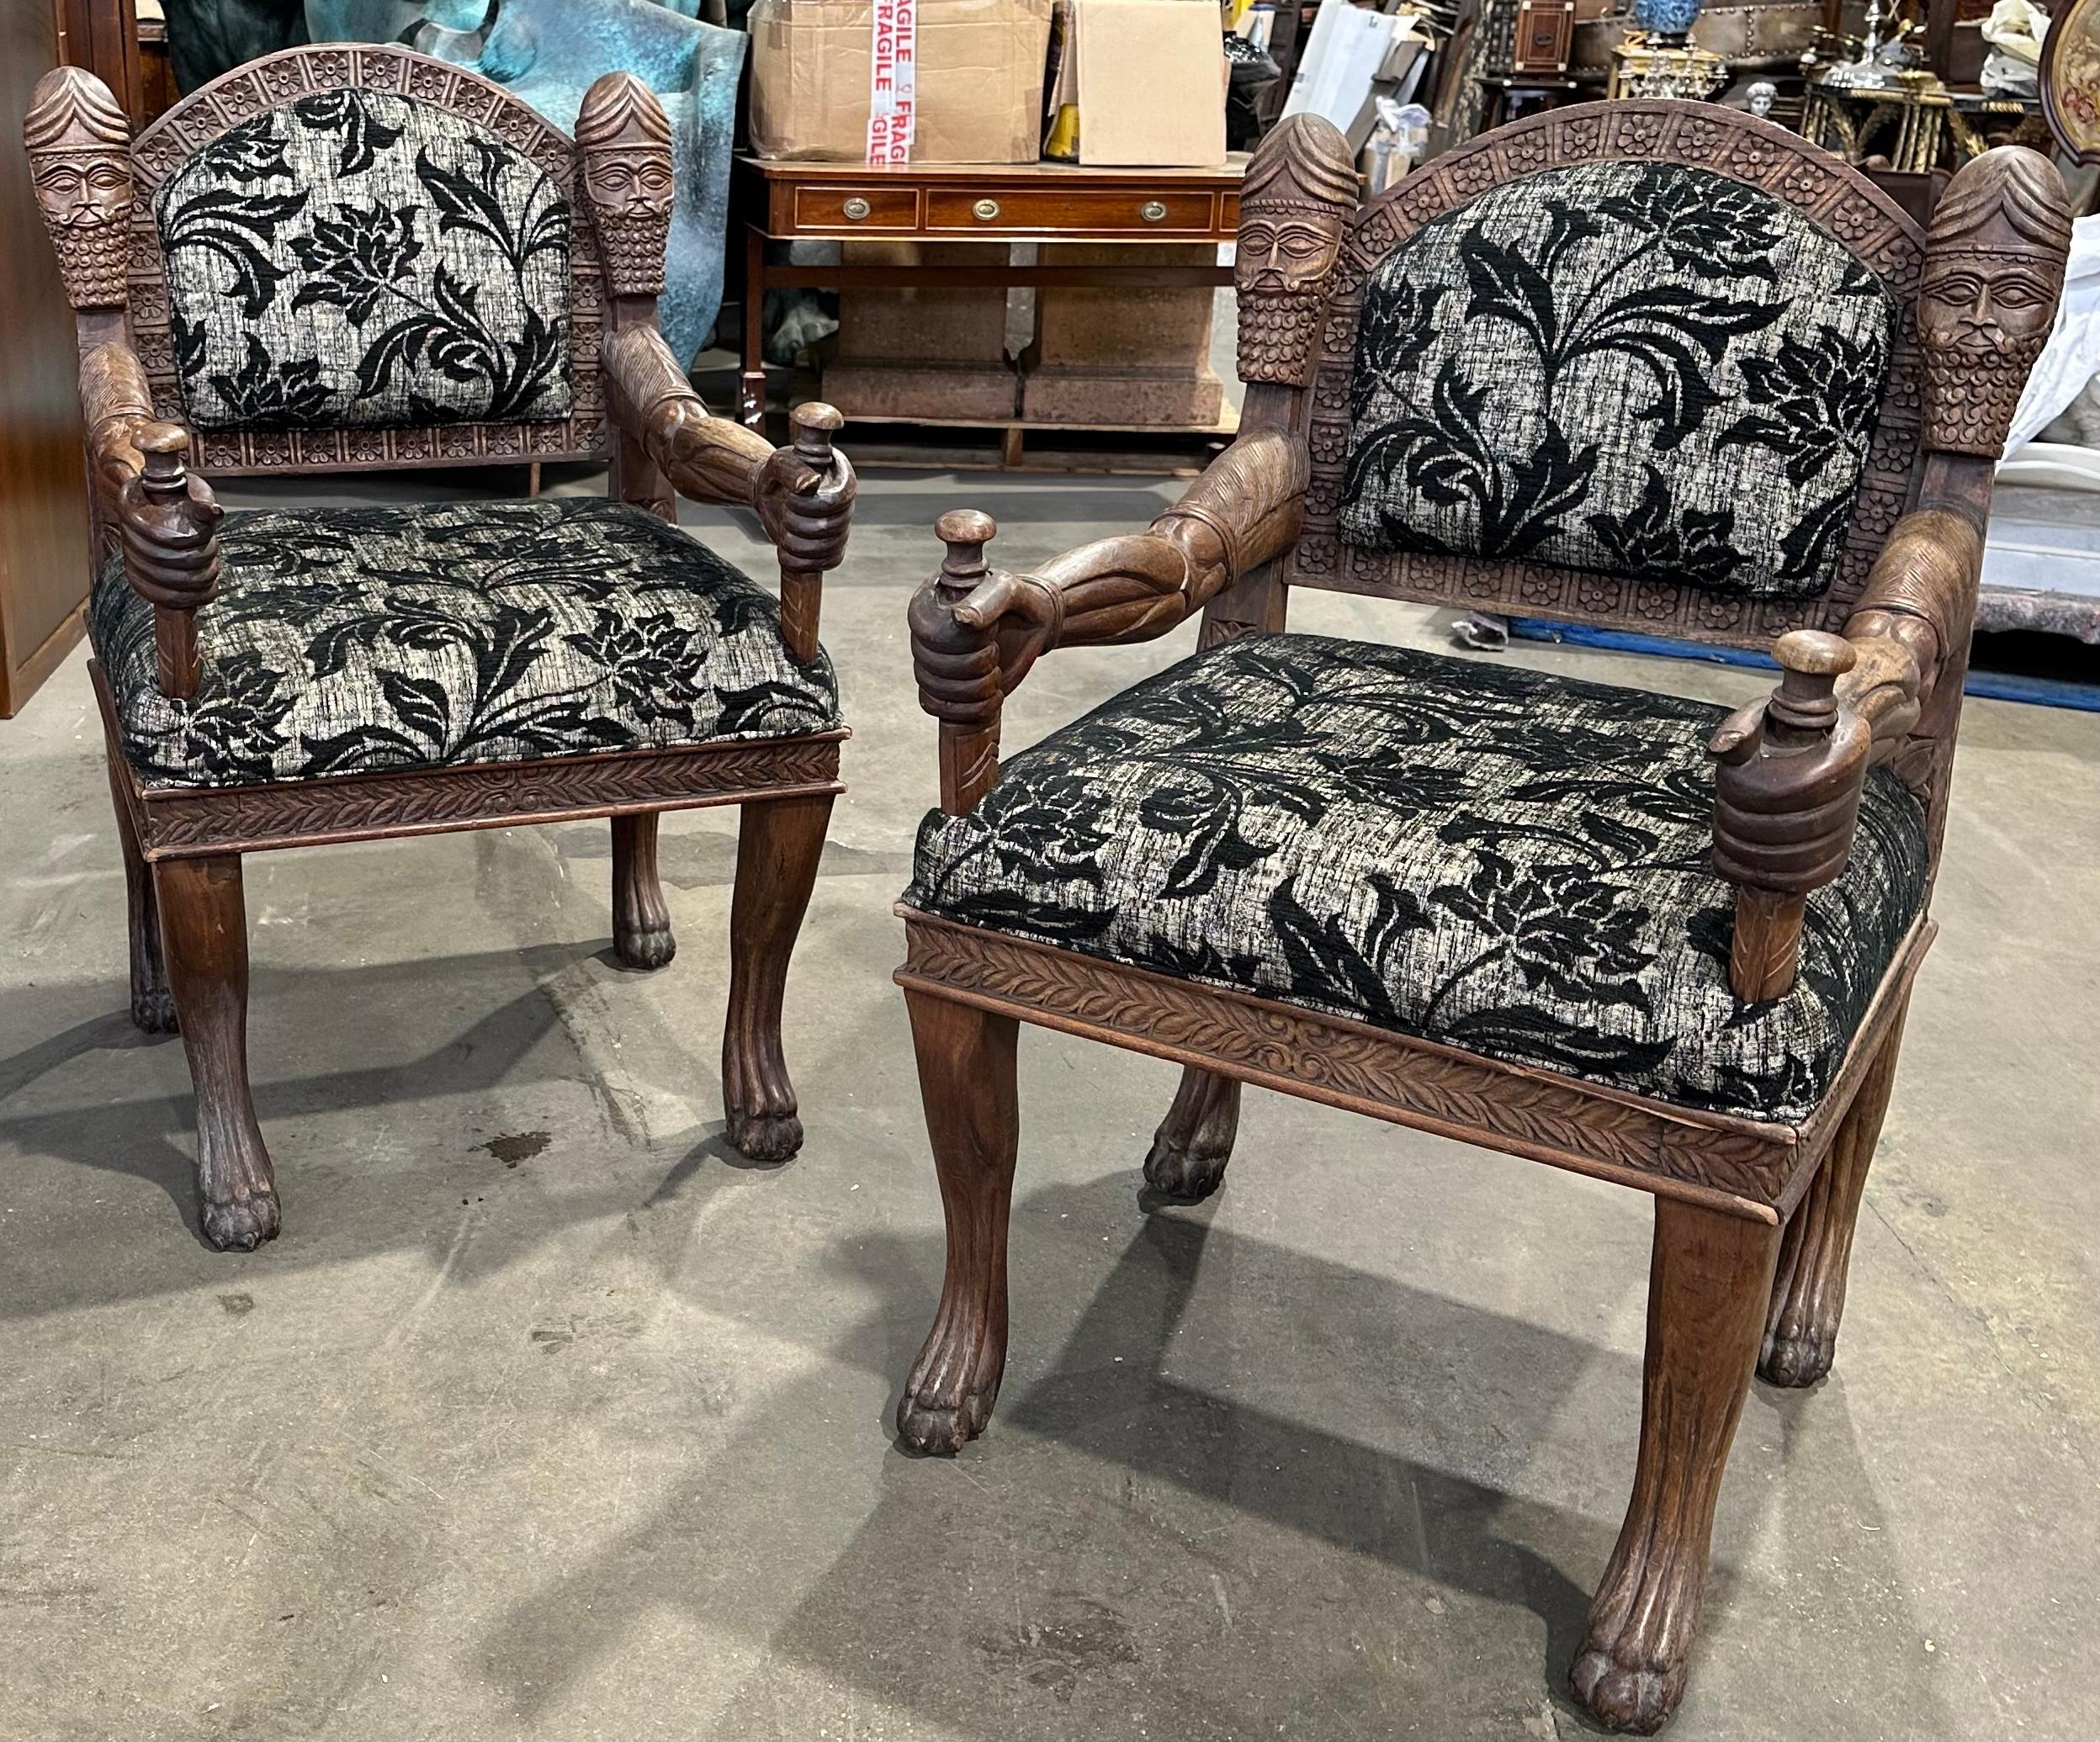 Paire de fauteuils en bois dur, inhabituels et décoratifs, tapissés de tissu à motifs floraux. Les bras de la chaise sont sculptés à la main avec de beaux profils masculins et des barbes bouclées. Le dossier de la chaise est orné d'une magnifique